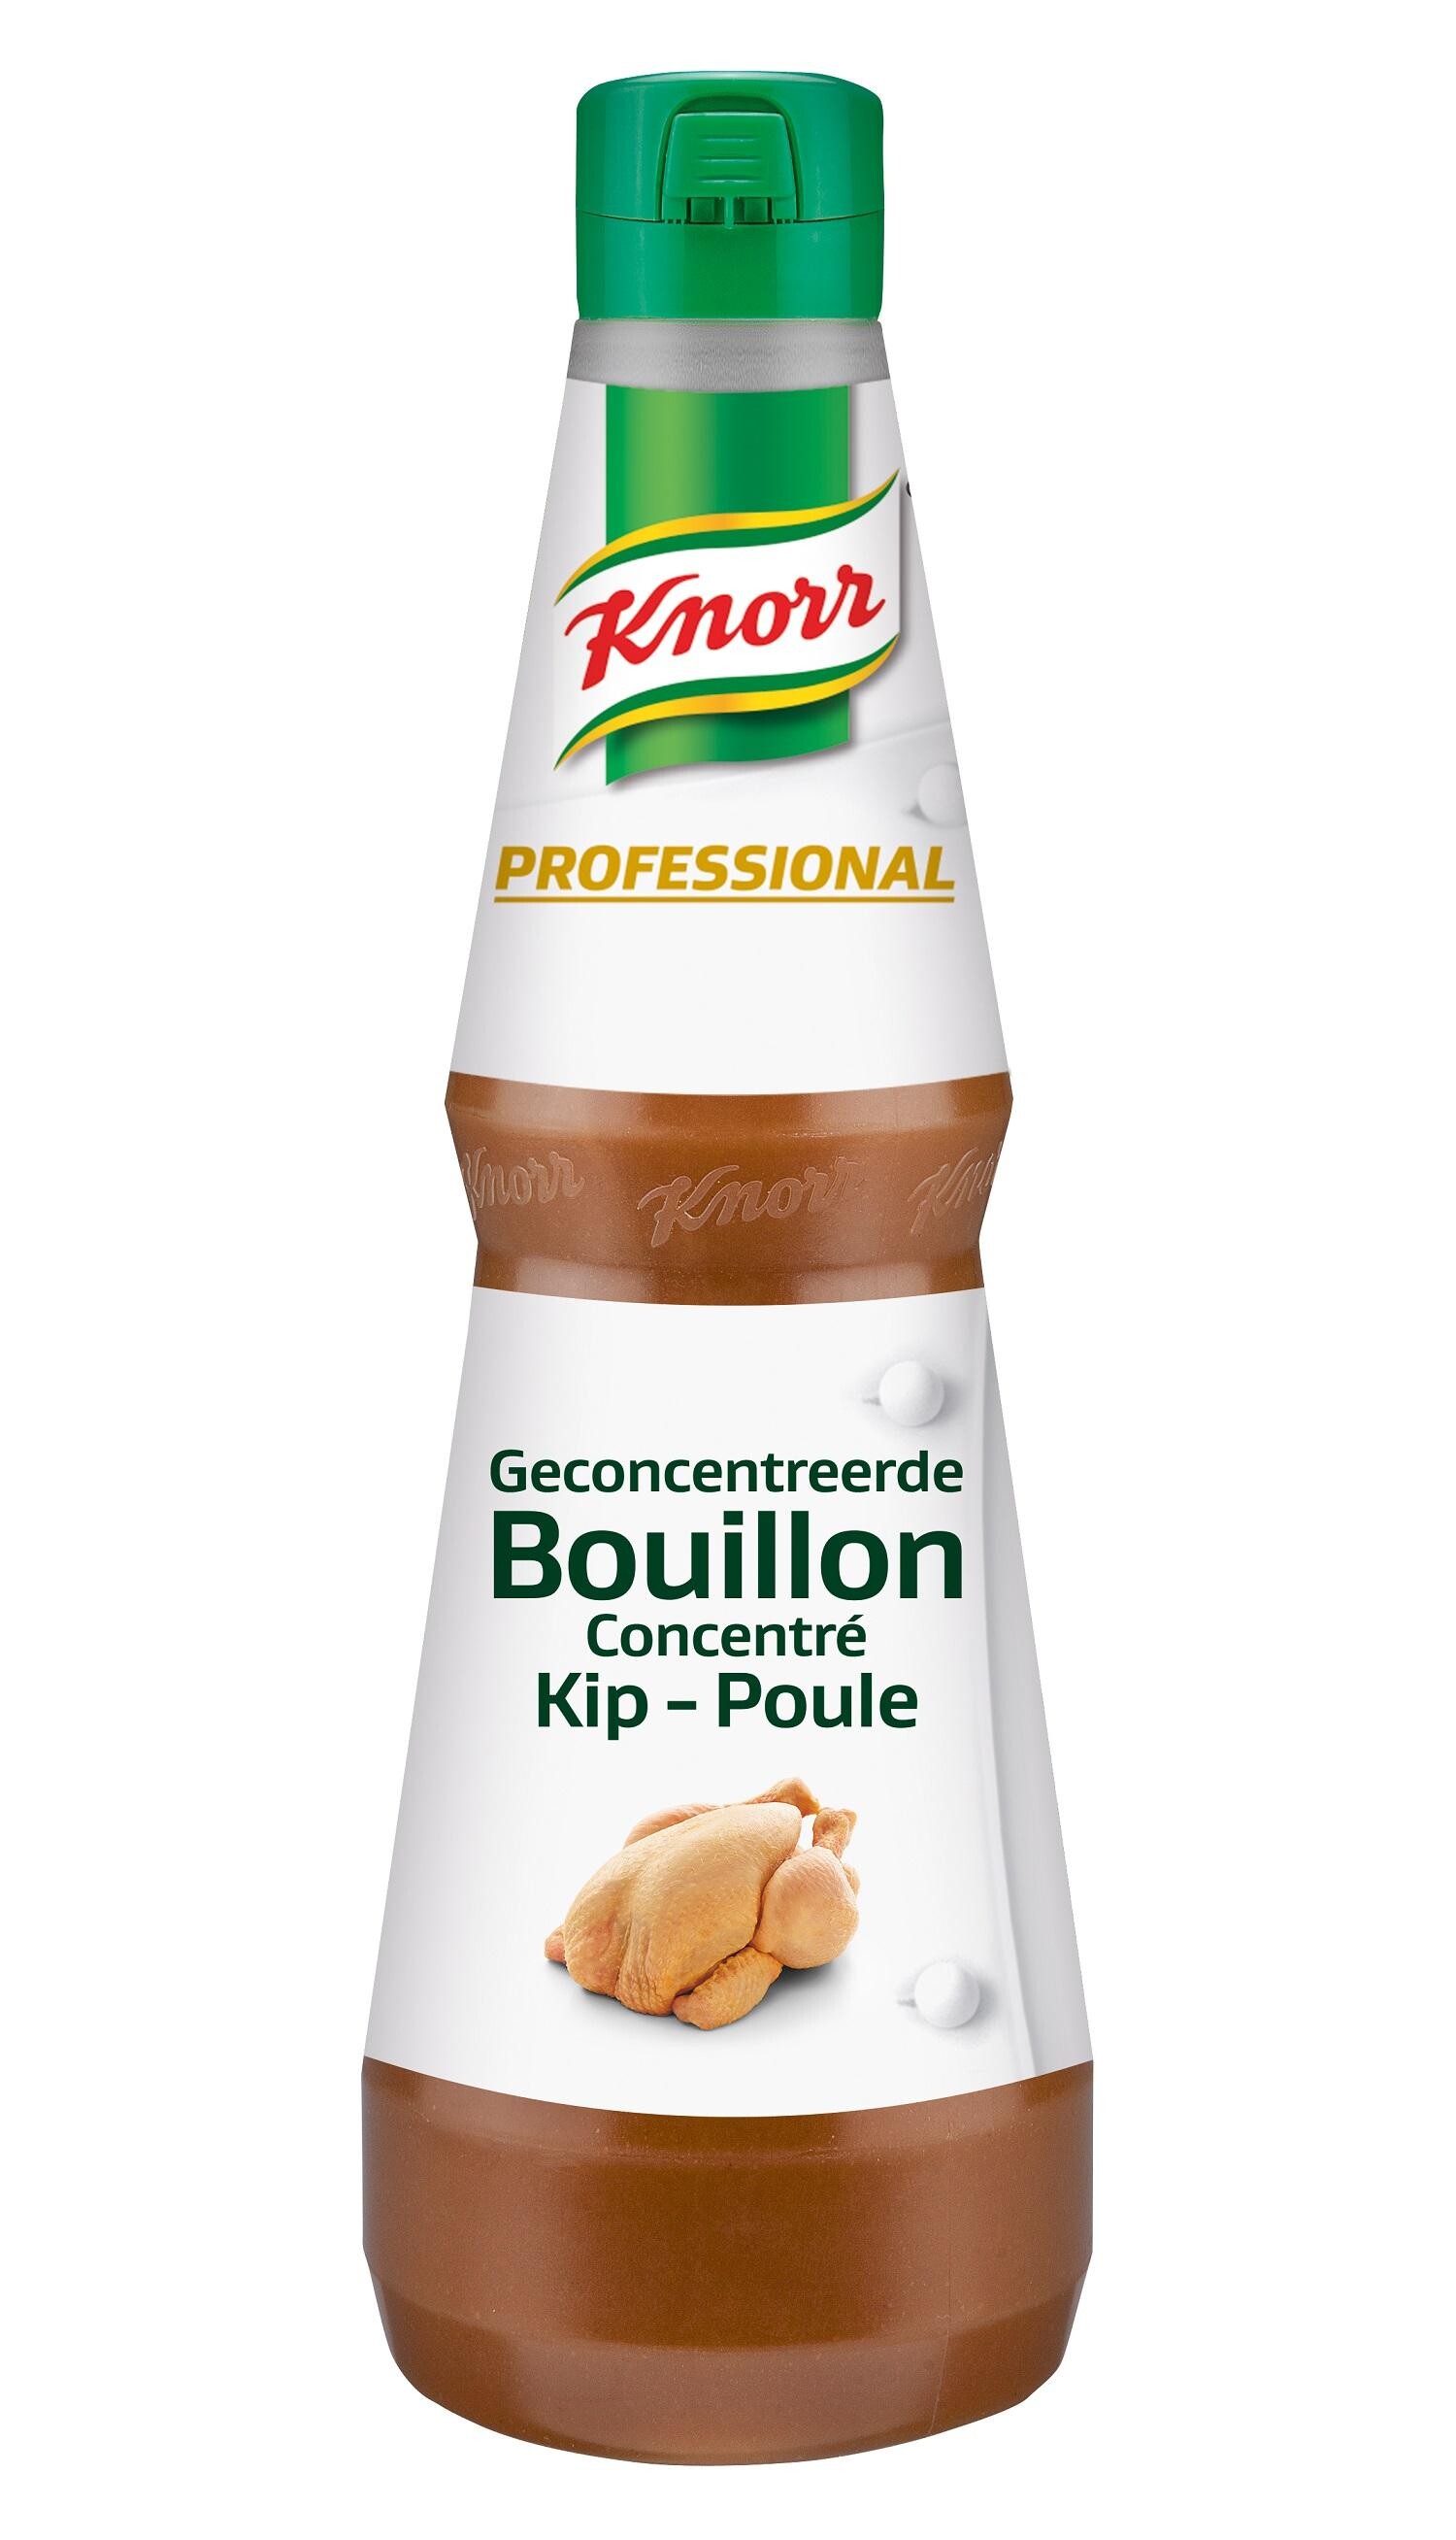 Knorr Geconcentreerde Kippenbouillon vloeibaar 1L Professional